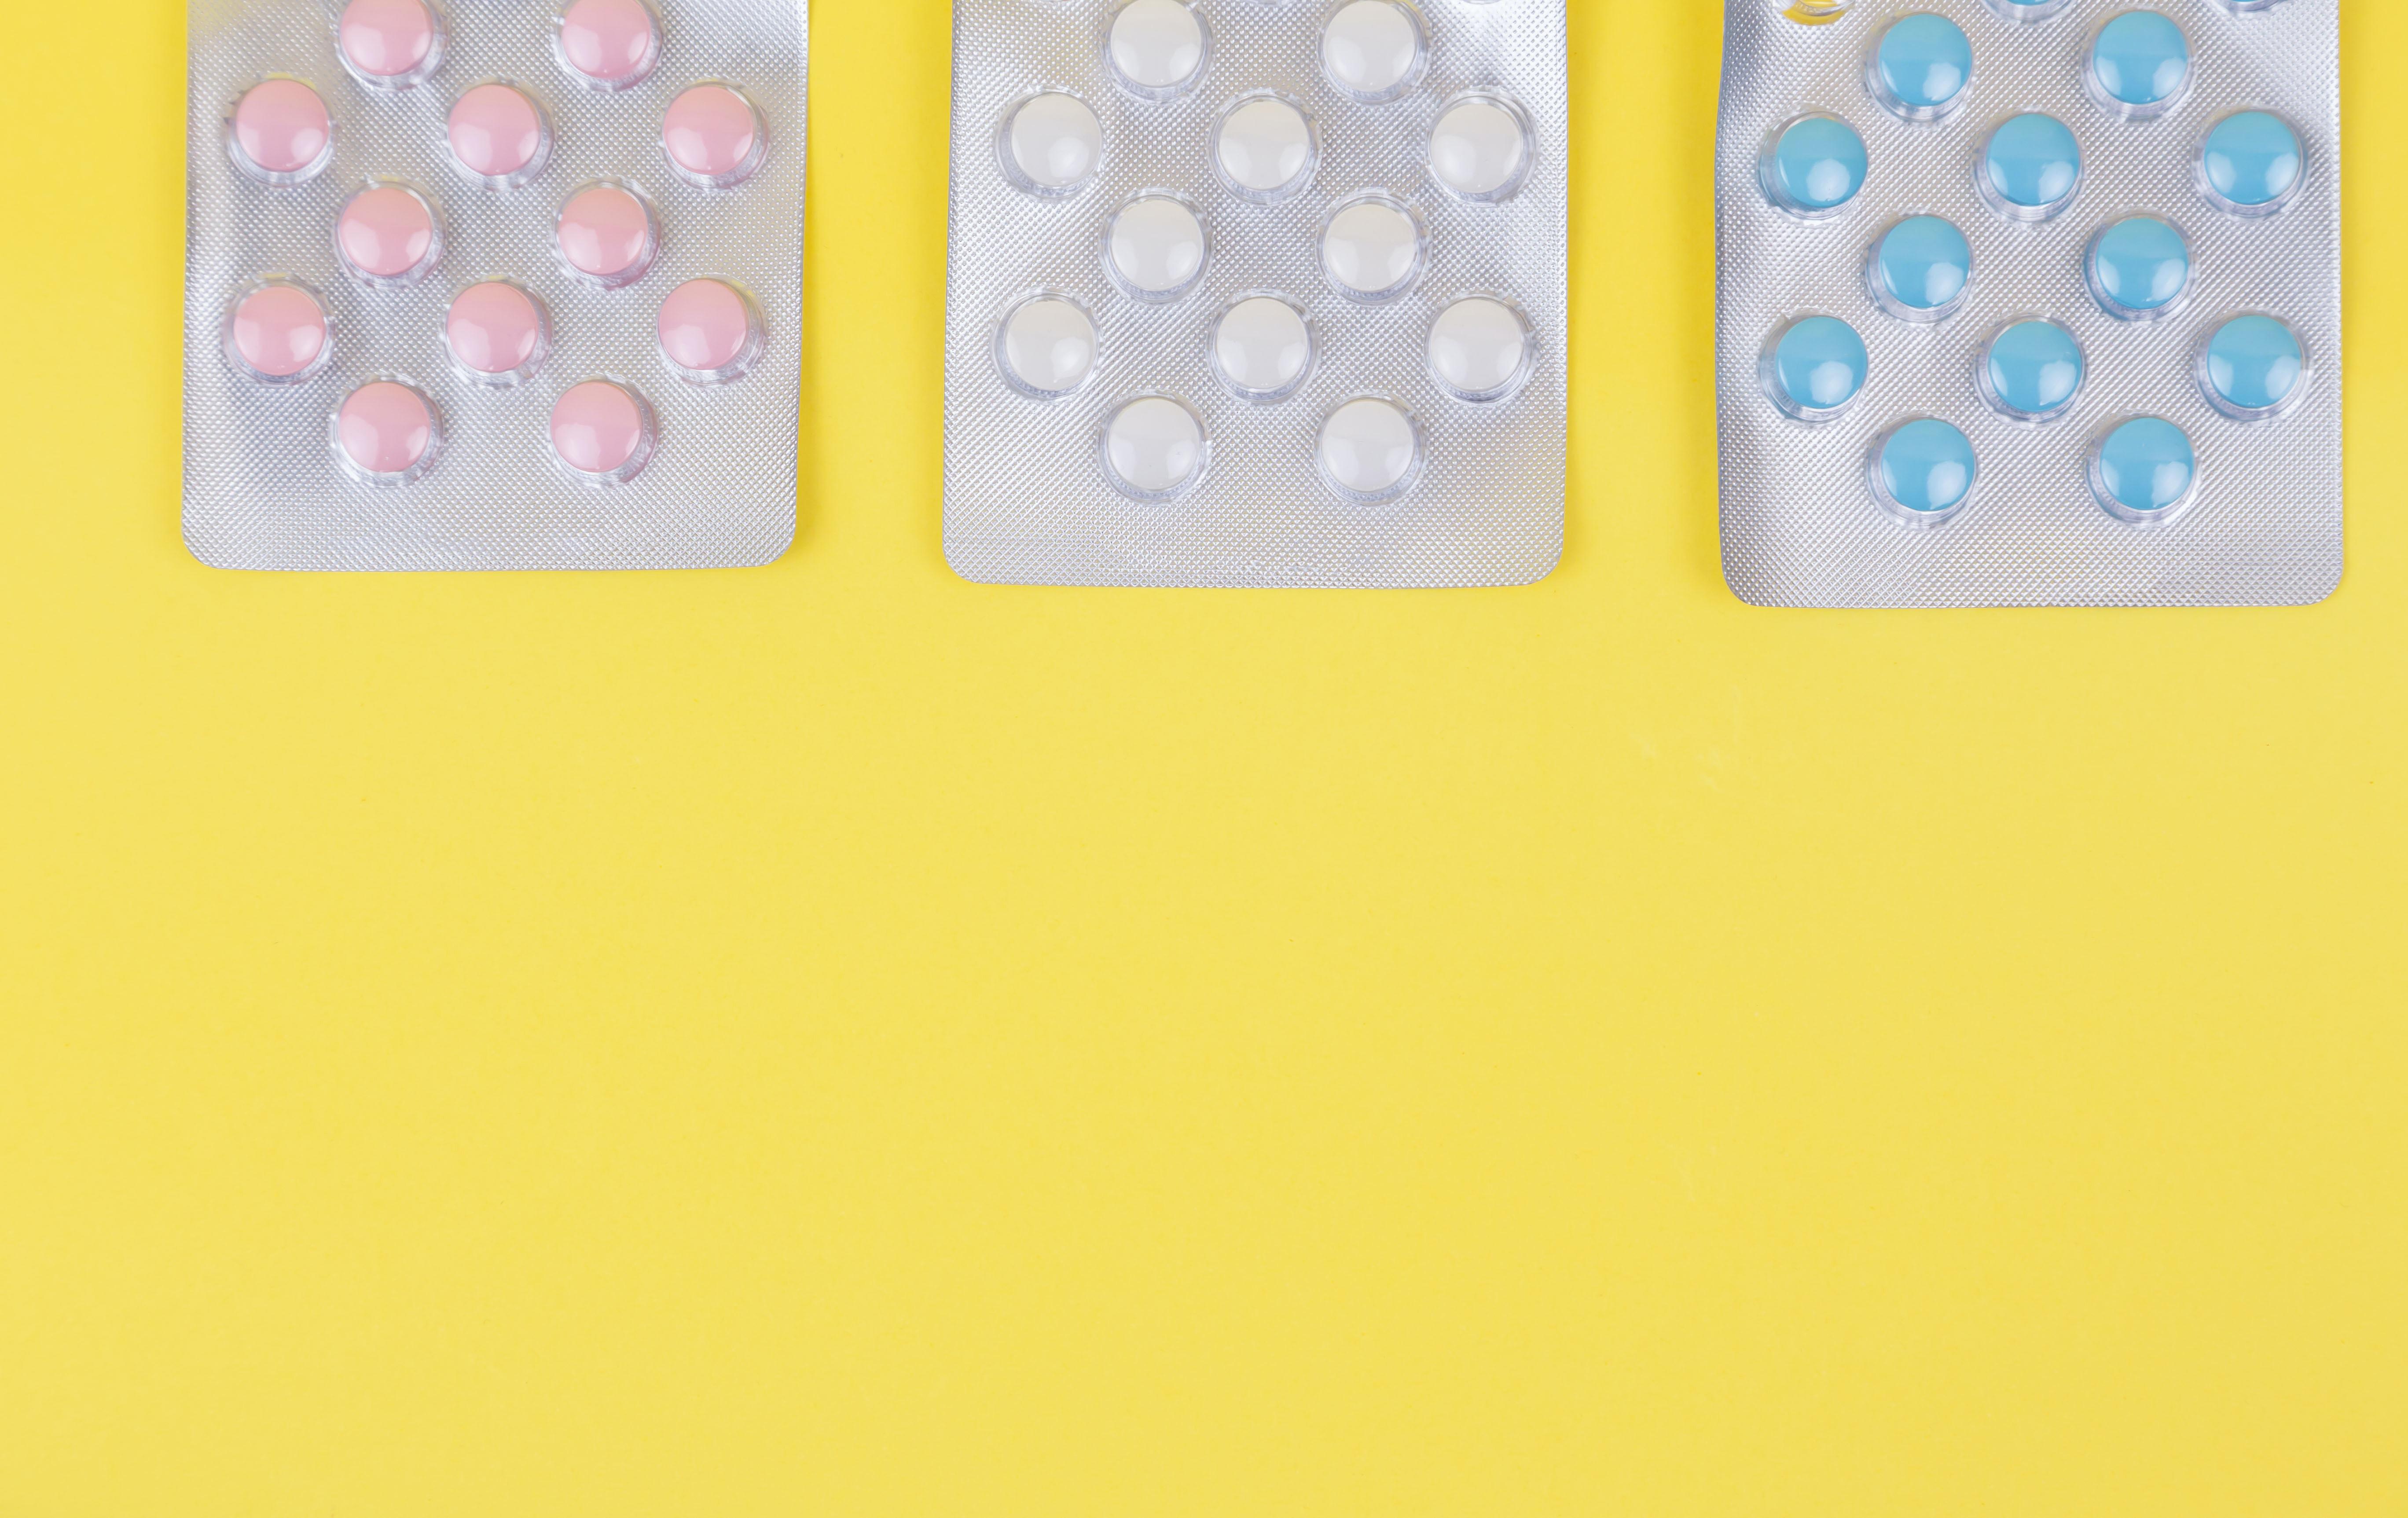 pastillas anticonceptivas conducir